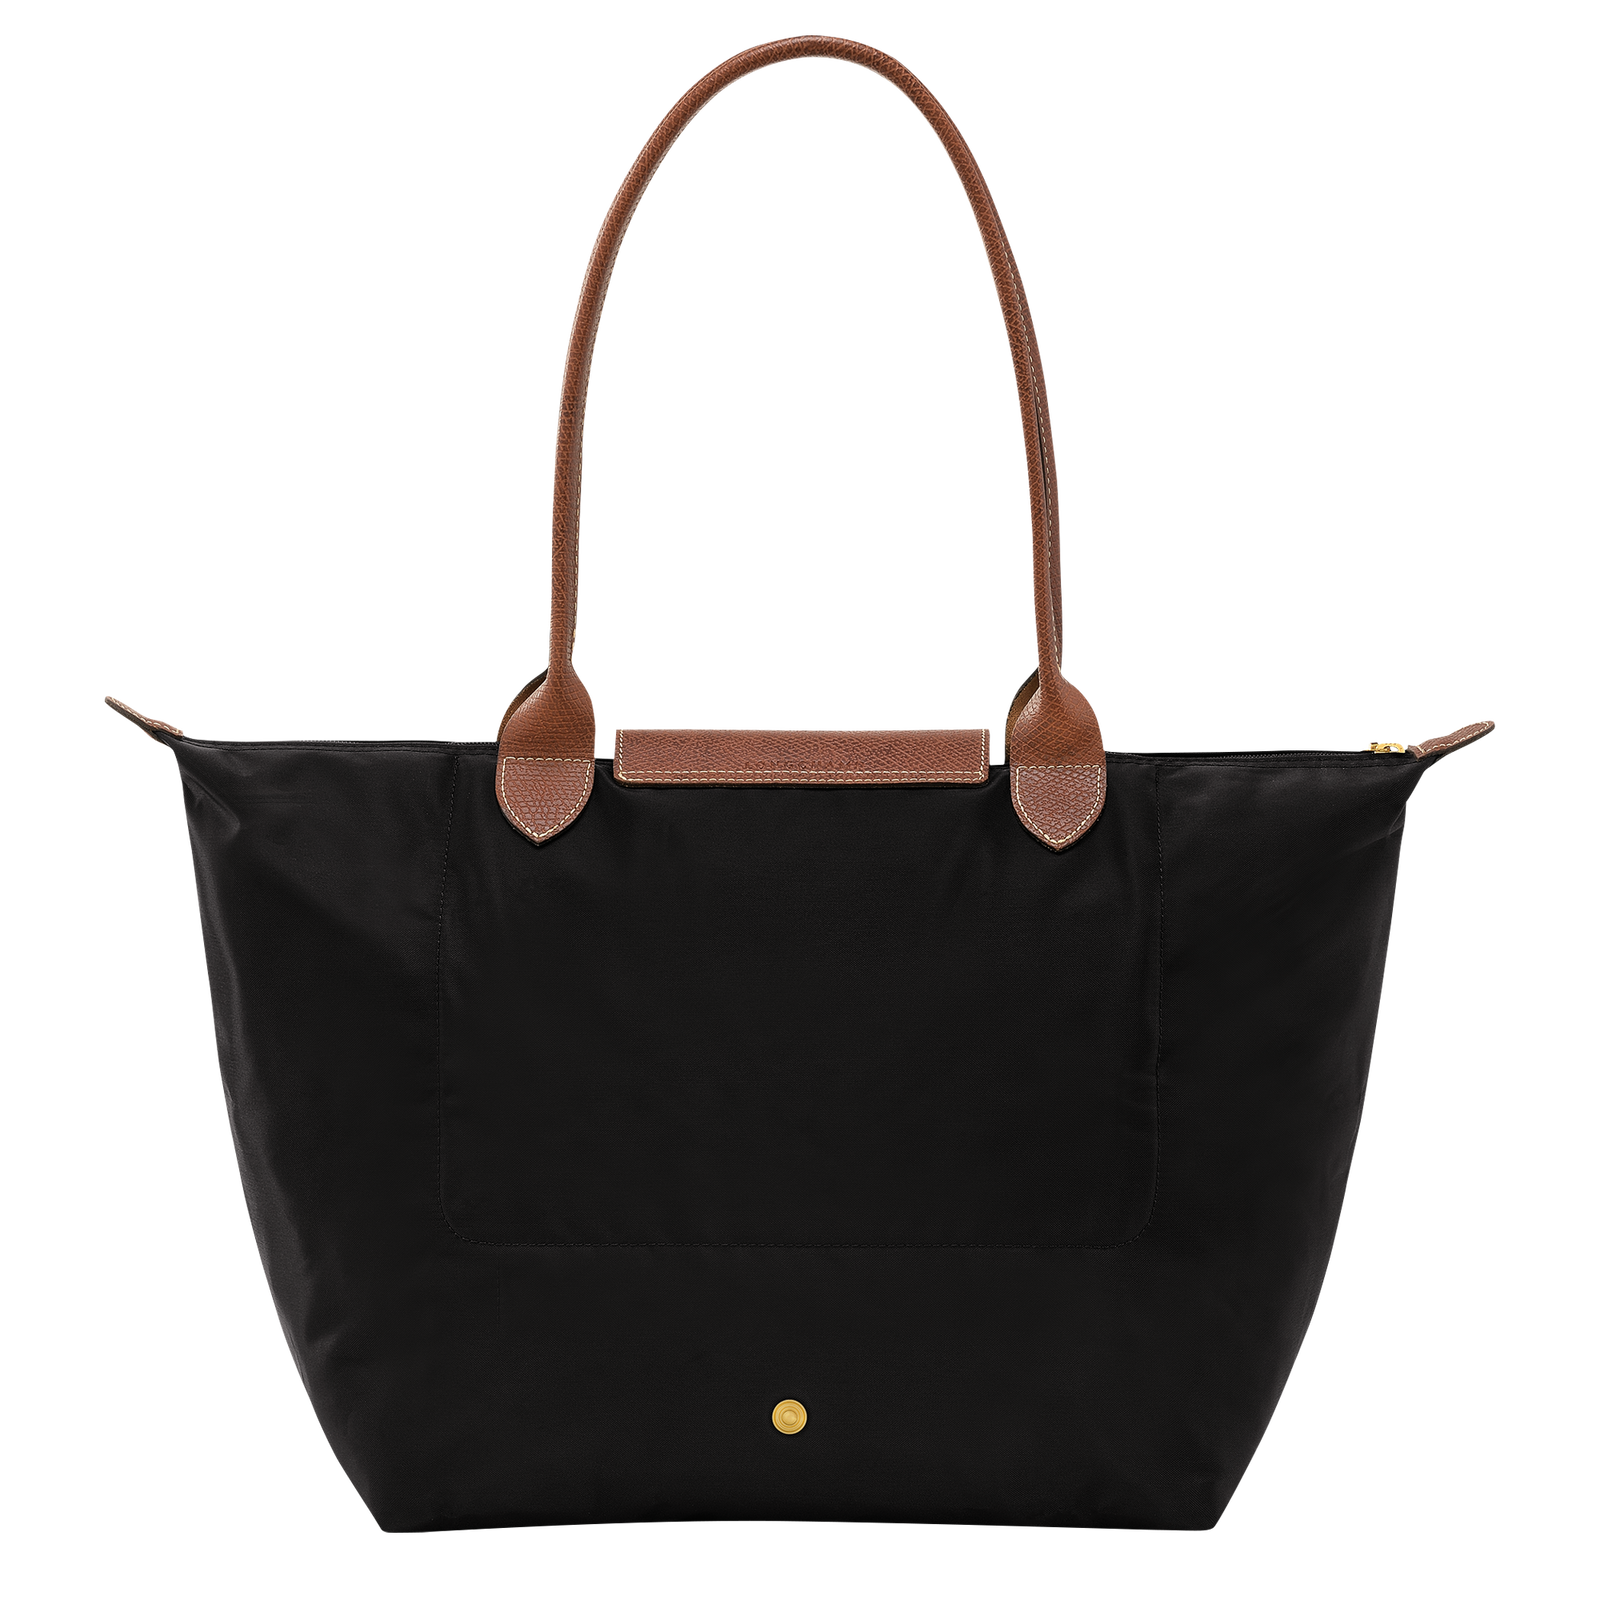 Le Pliage Original L Tote bag Black - Recycled canvas | Longchamp US